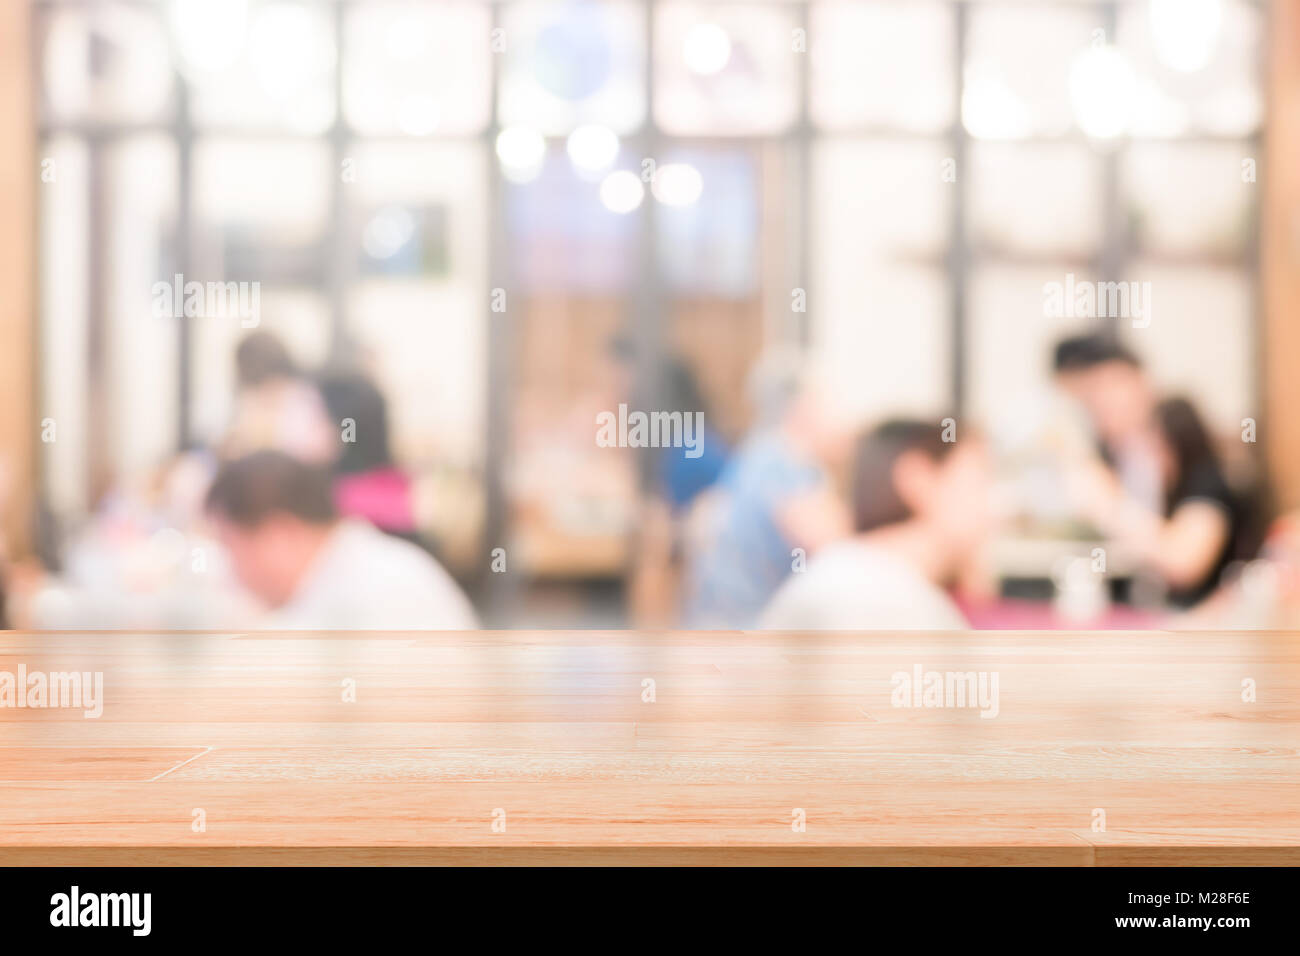 Leere Holz Tischplatte mit Kunden im Restaurant blur Hintergrund mit Bokeh oder Kaffee Cafe Hintergrund für Montage Produkt vorhanden Stockfoto